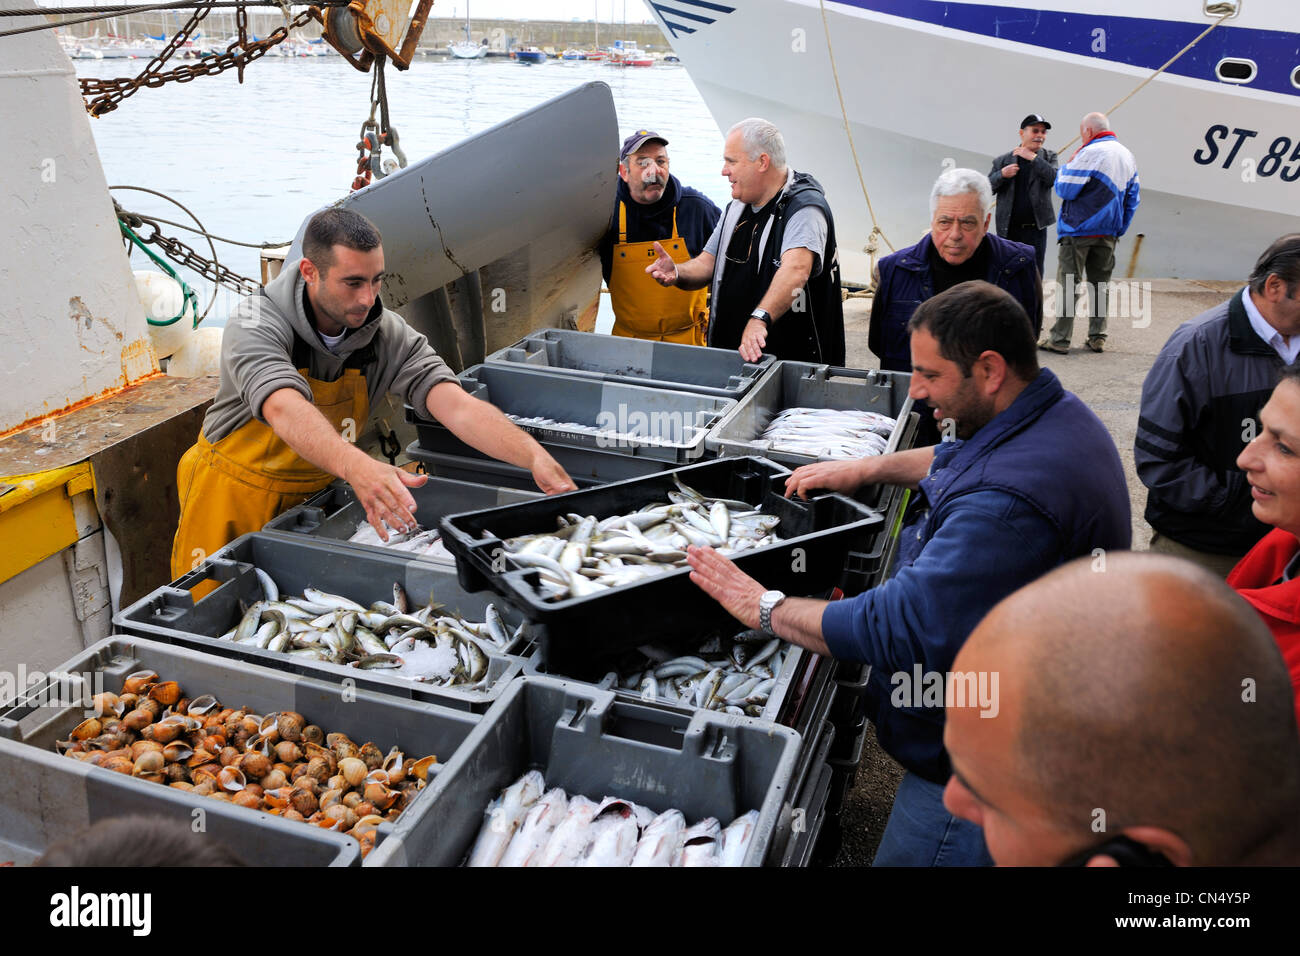 Francia, Herault, Sete, el mercado de subasta de pescado, el desembarco de pesca Foto de stock